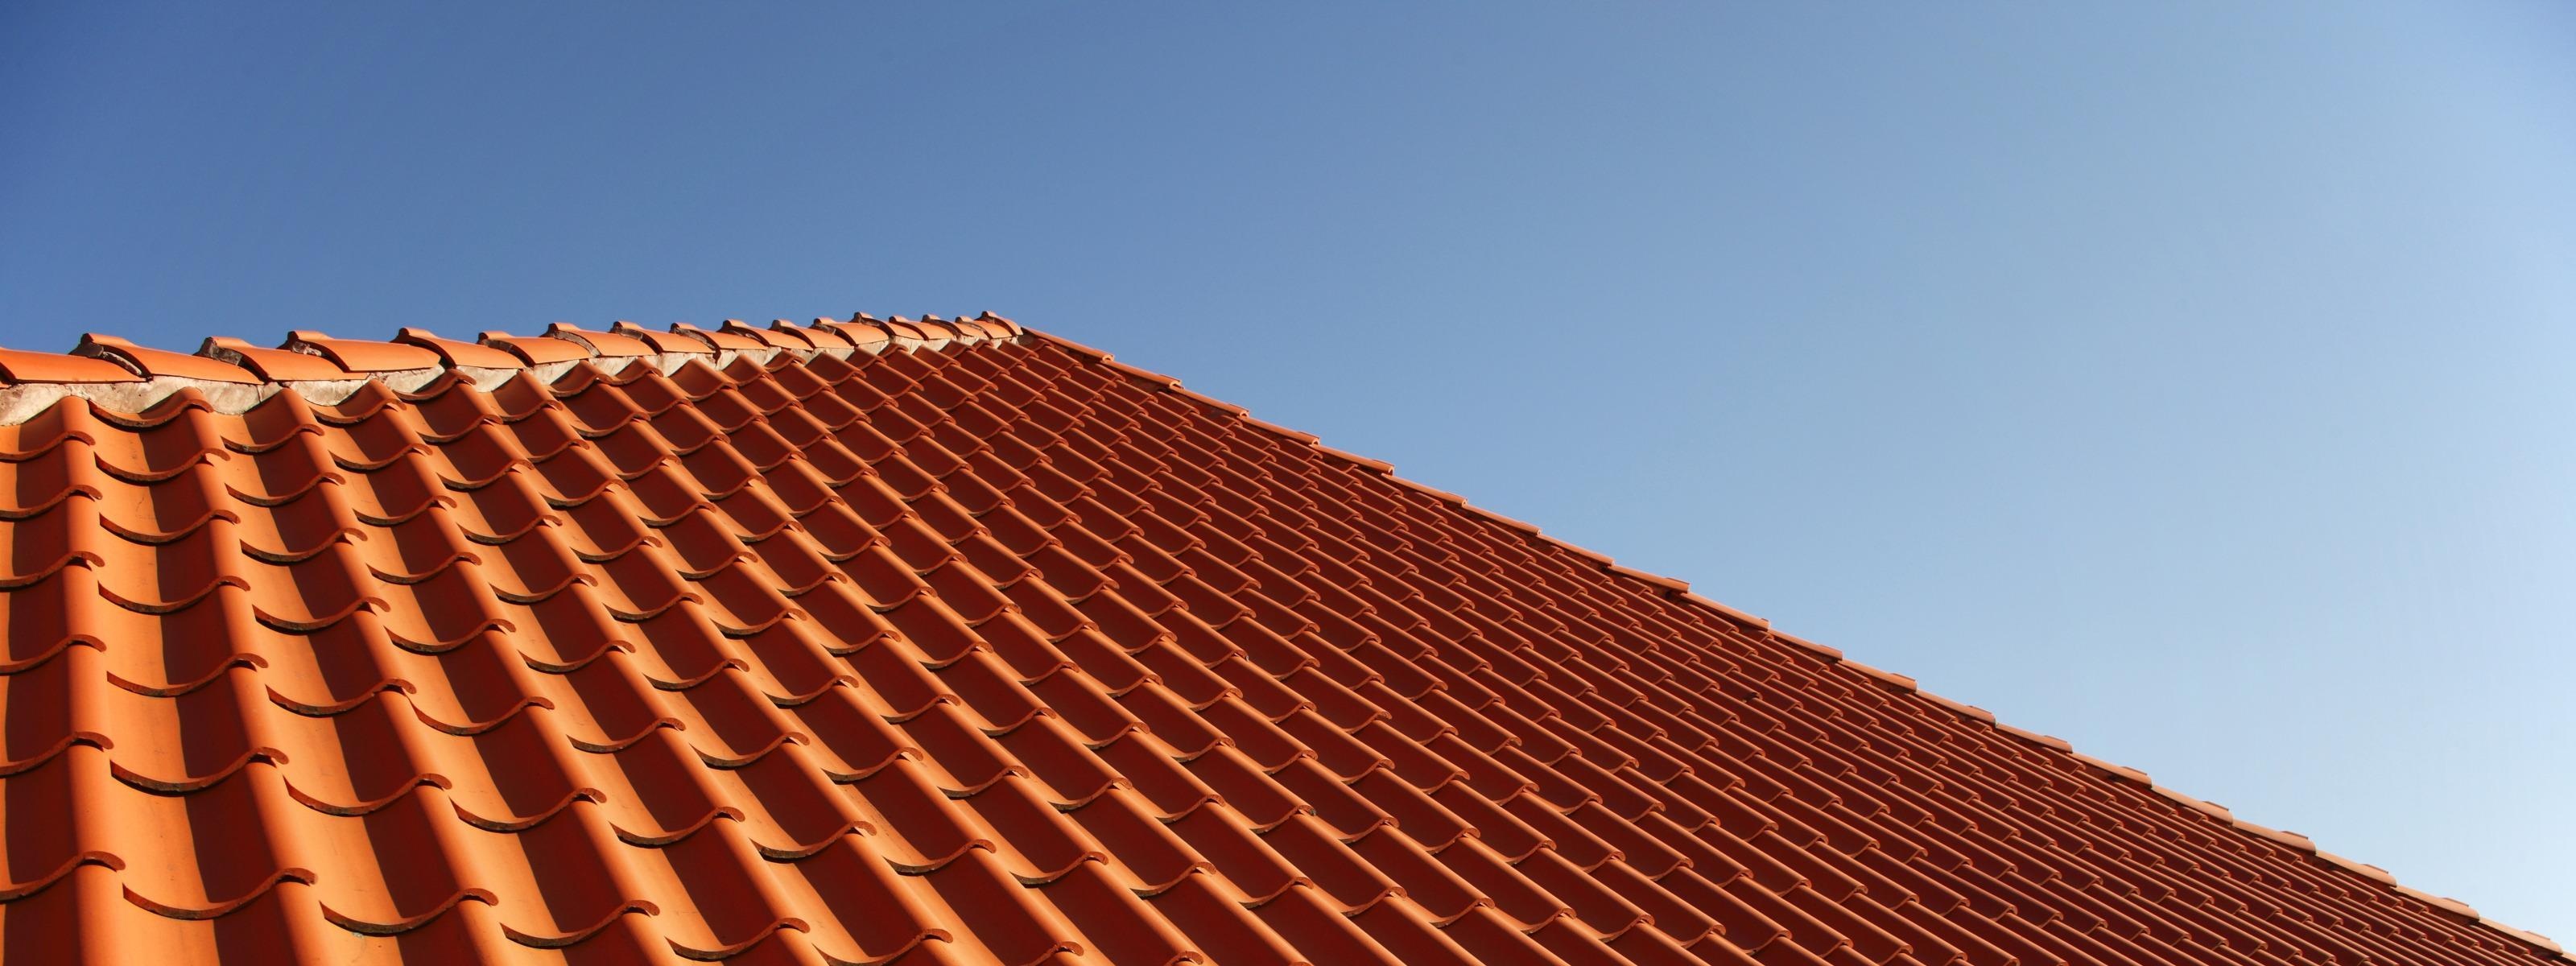 Detailansicht eines Daches mit rotorangen Dachschindeln, blauer Himmel im Hintergrund